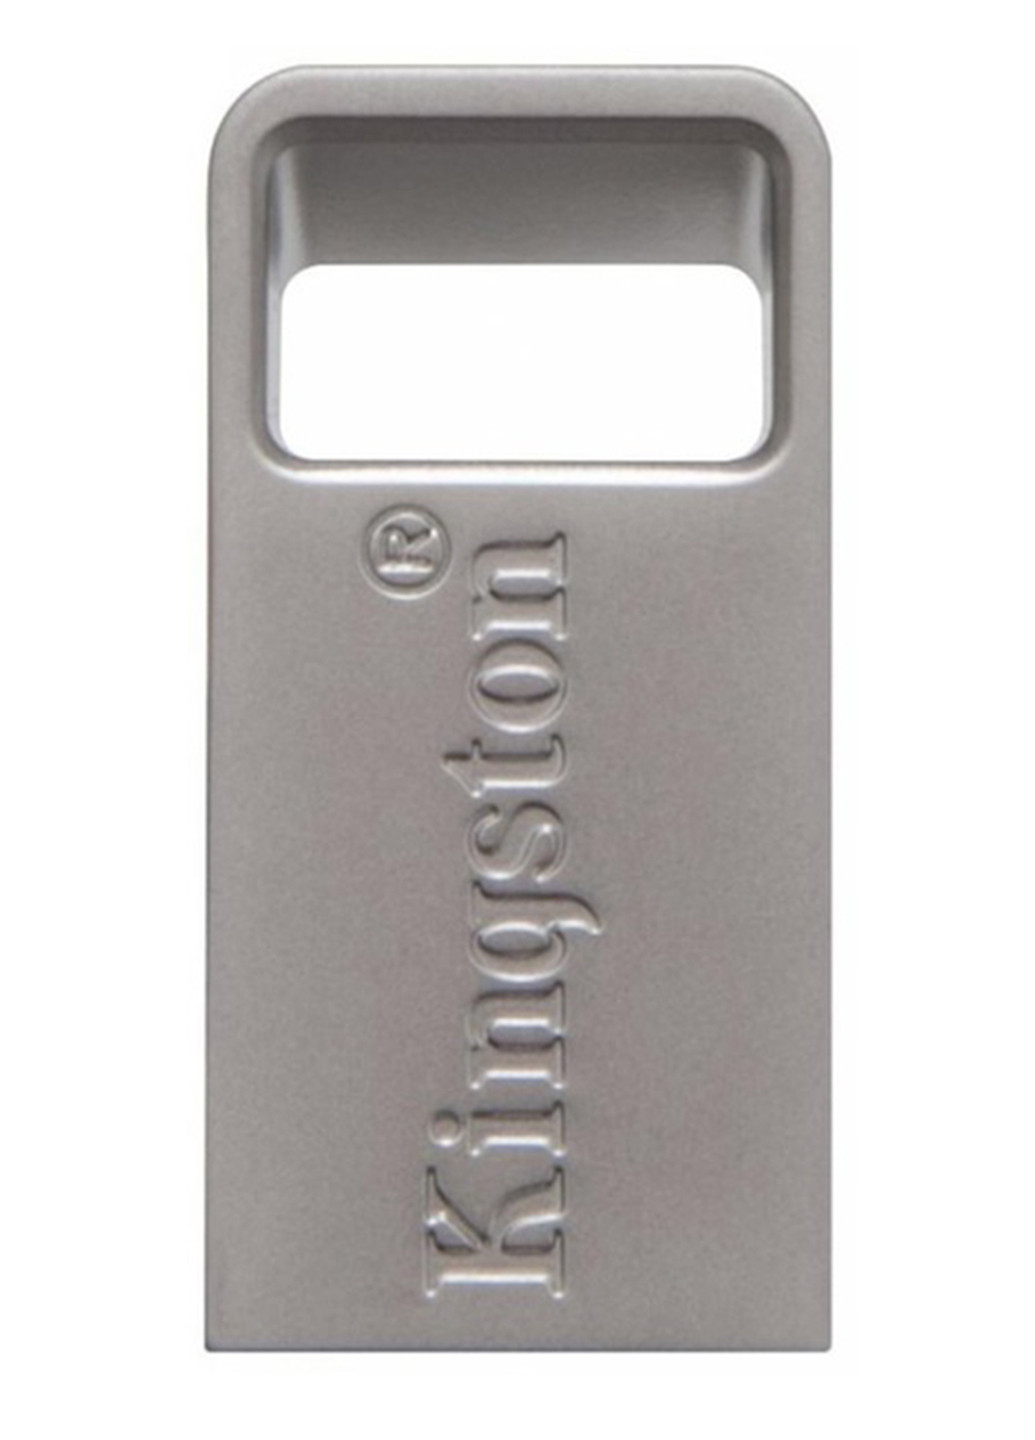 Флеш пам'ять USB DataTraveler Micro 3.1 64GB Metal Silver USB 3.1 (DTMC3 / 64GB) Kingston флеш память usb kingston datatraveler micro 3.1 64gb metal silver usb 3.1 (dtmc3/64gb) (135165474)